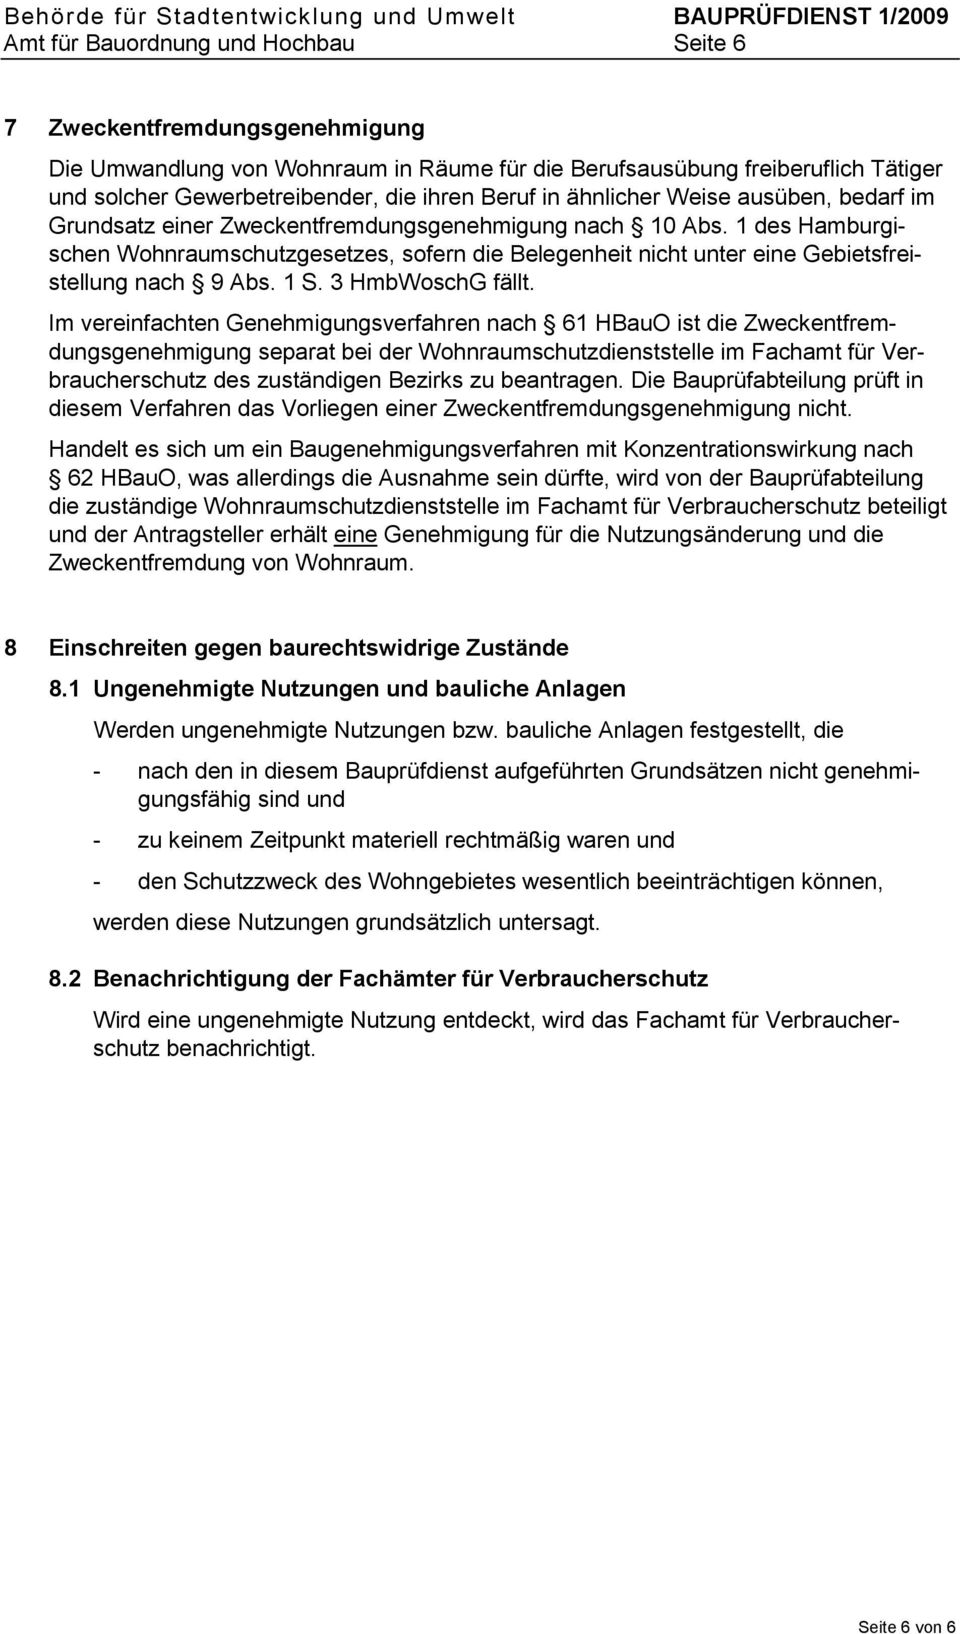 1 des Hamburgischen Wohnraumschutzgesetzes, sofern die Belegenheit nicht unter eine Gebietsfreistellung nach 9 Abs. 1 S. 3 HmbWoschG fällt.